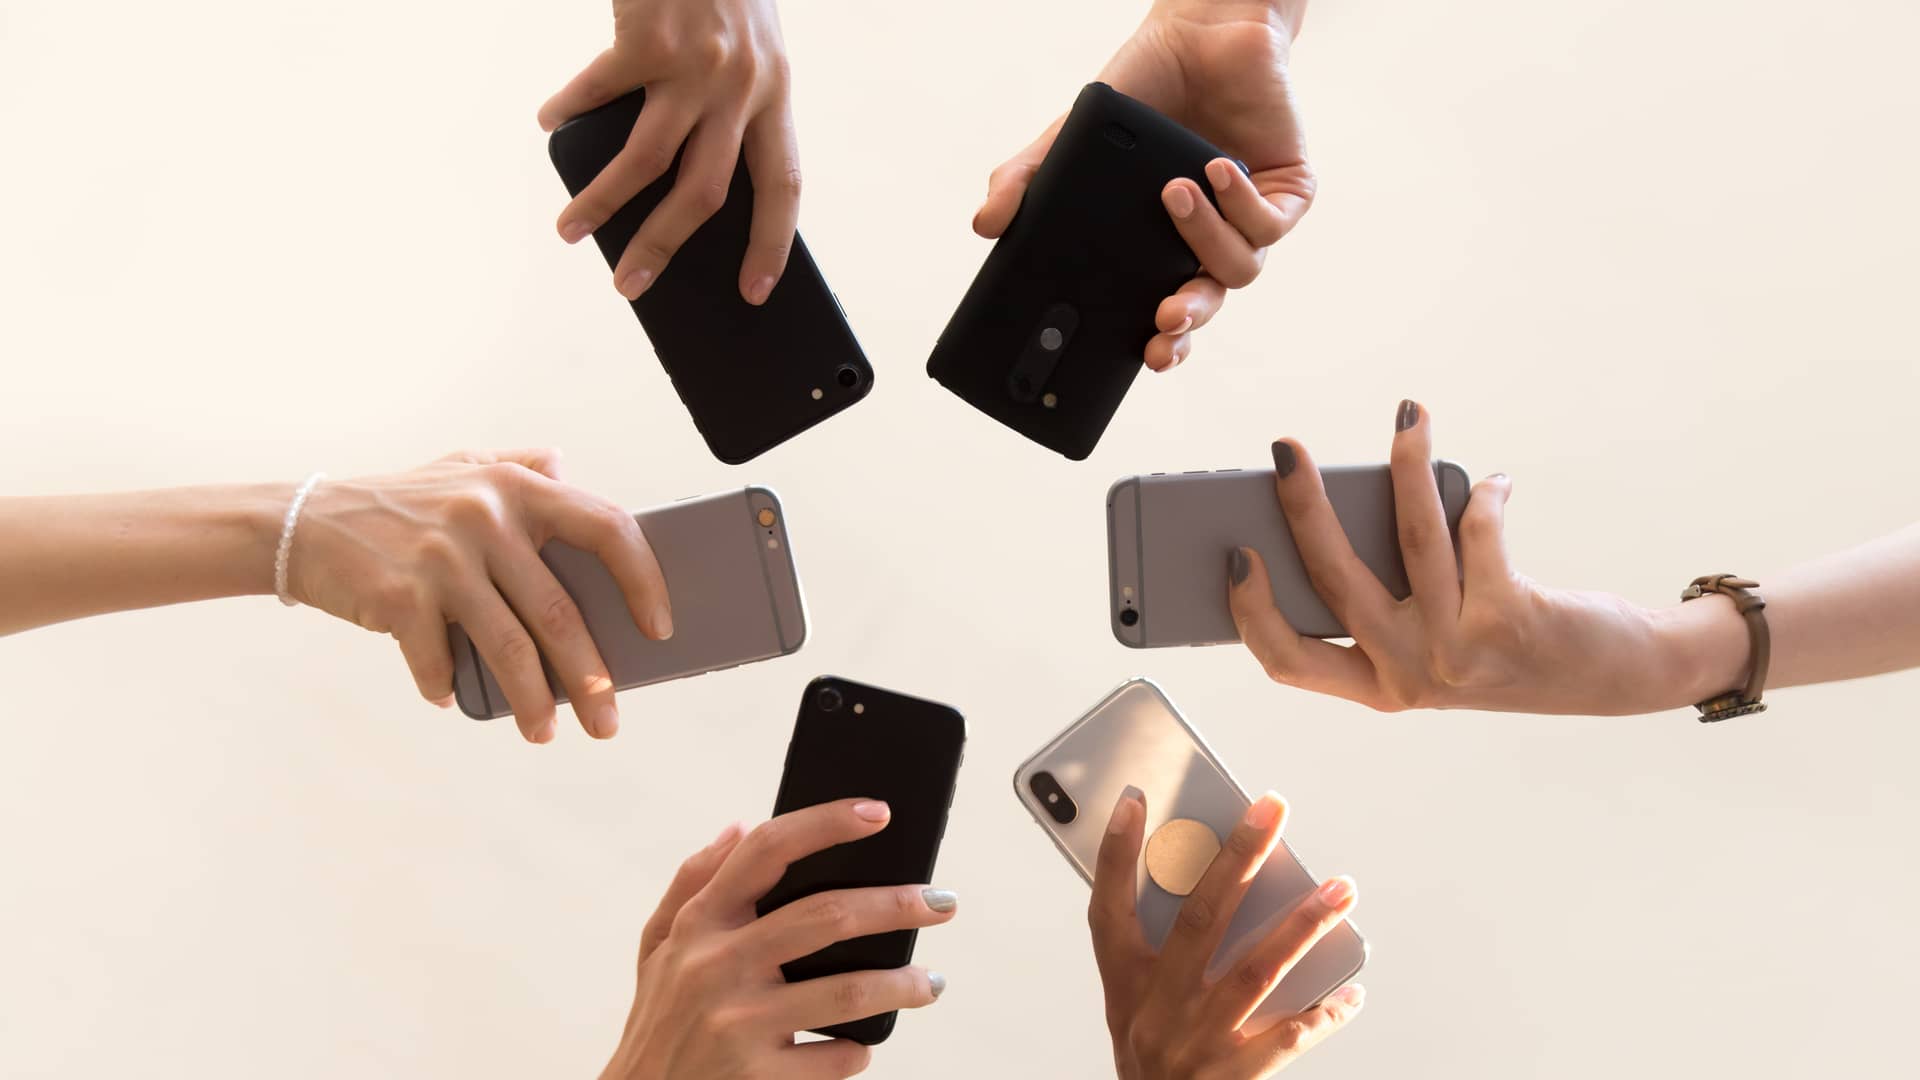 grupo de amigos sujetando sus celulares para comparar cual es el mejor